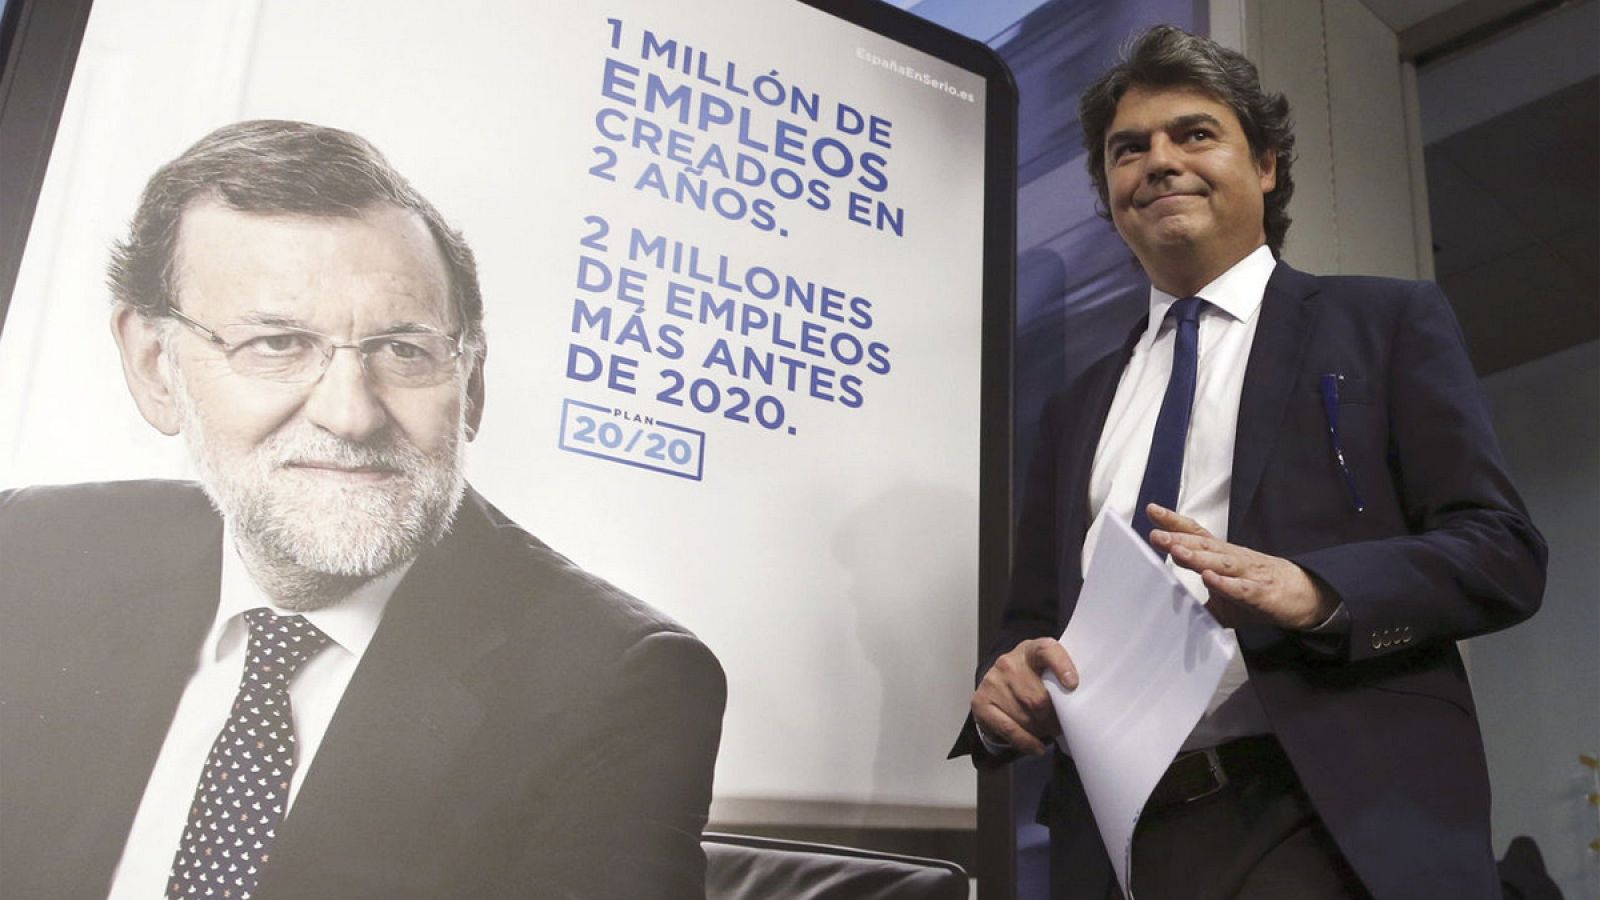 Jorge Moragas, jefe de gabinete de Mariano Rajoy, pasa frente a un cartel de las elecciones generales de 2015.